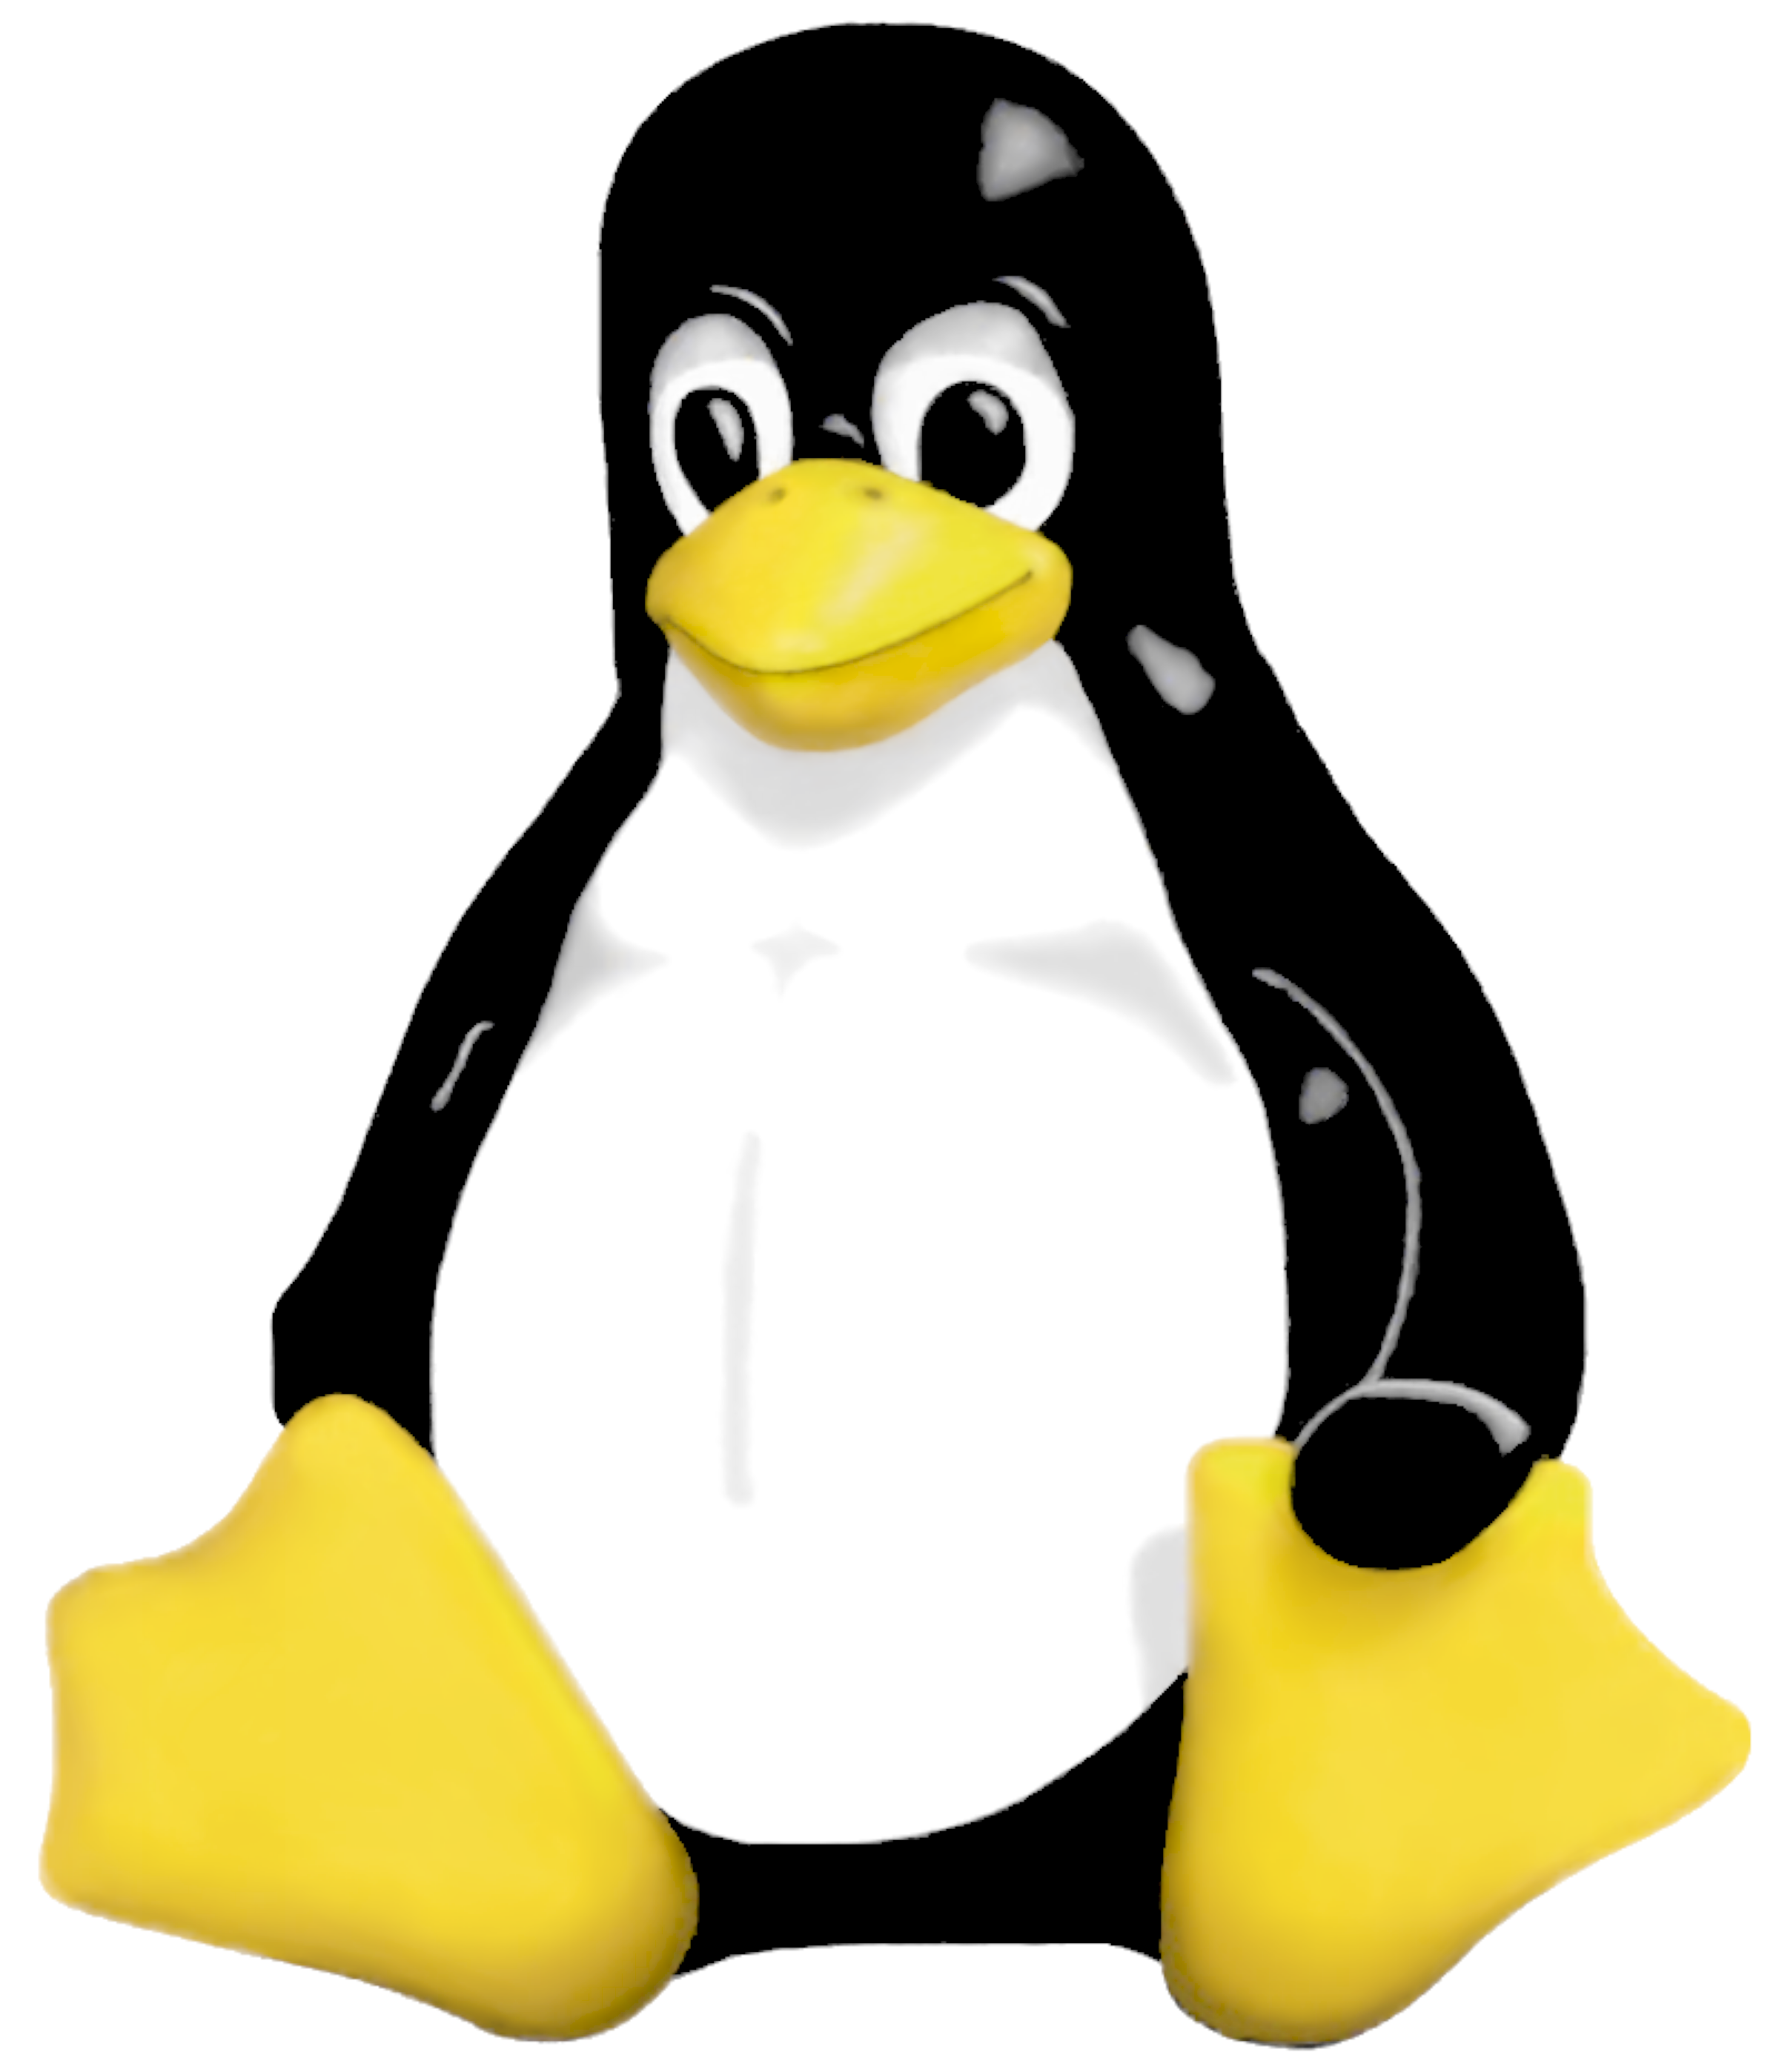 Capacitac a o Linux Introduc a o Sistema Operacional GNU Linux Histo ria 1973 - O Unix e rescrito em linguagem C pelo pro prio criador da linguagem, Dennis Ritchie